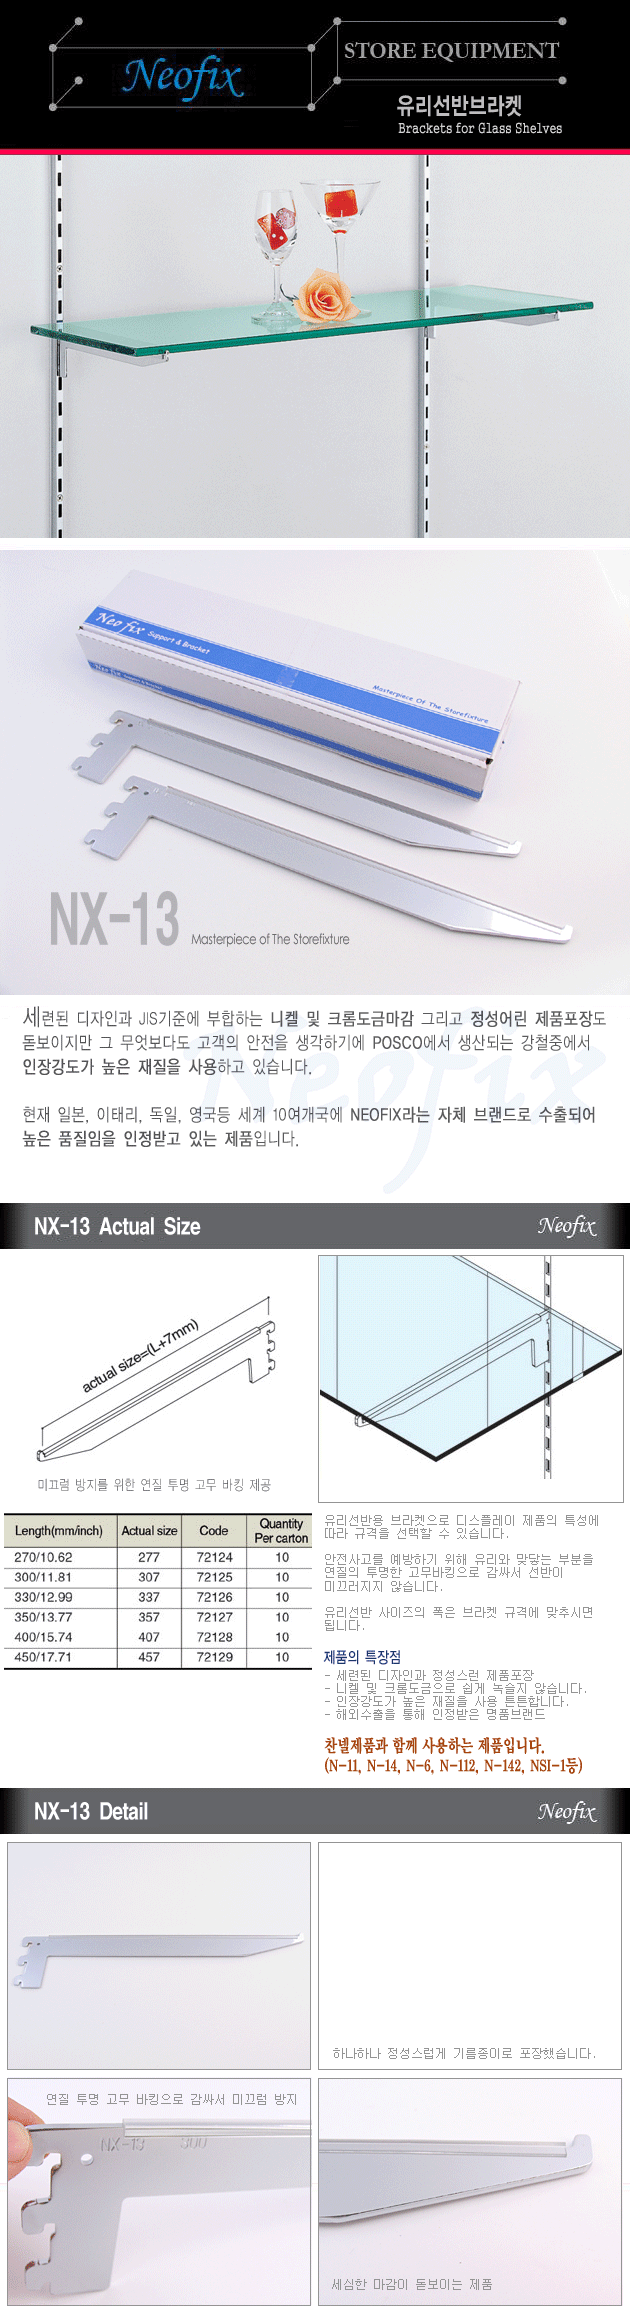 NX-13